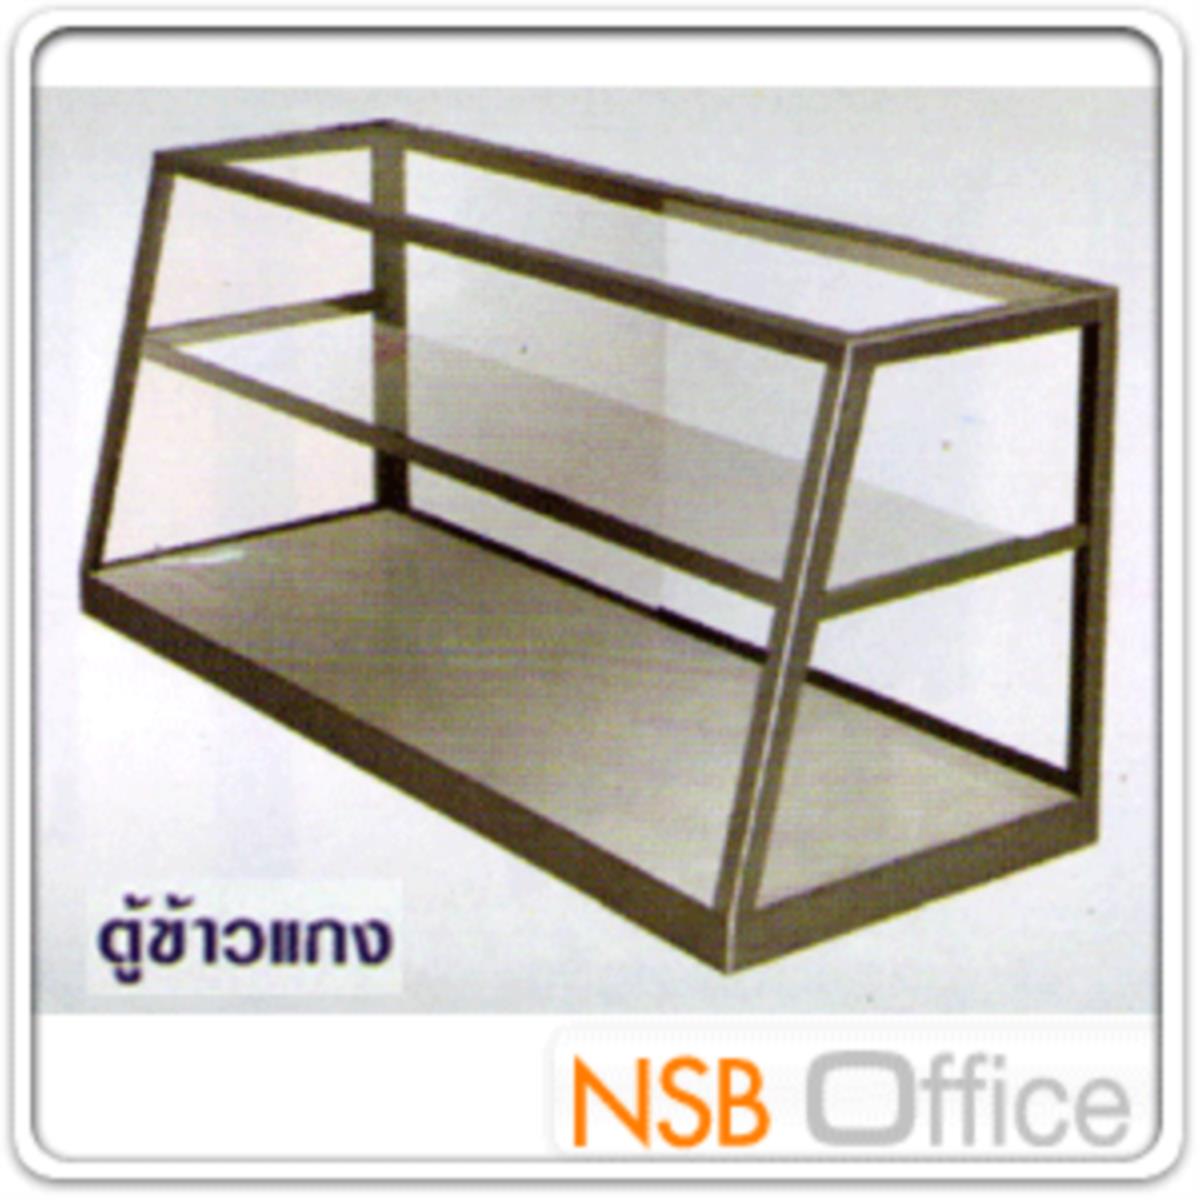 ตู้กระจกข้าวแกงหน้าเฉียงมุมเหลี่ยม บานเลื่อน มีแผ่นชั้น โครงอลูมิเนียม  (3,4,5,6 ฟุต *55D*60H cm.) ขอบมุมเหลี่ยม